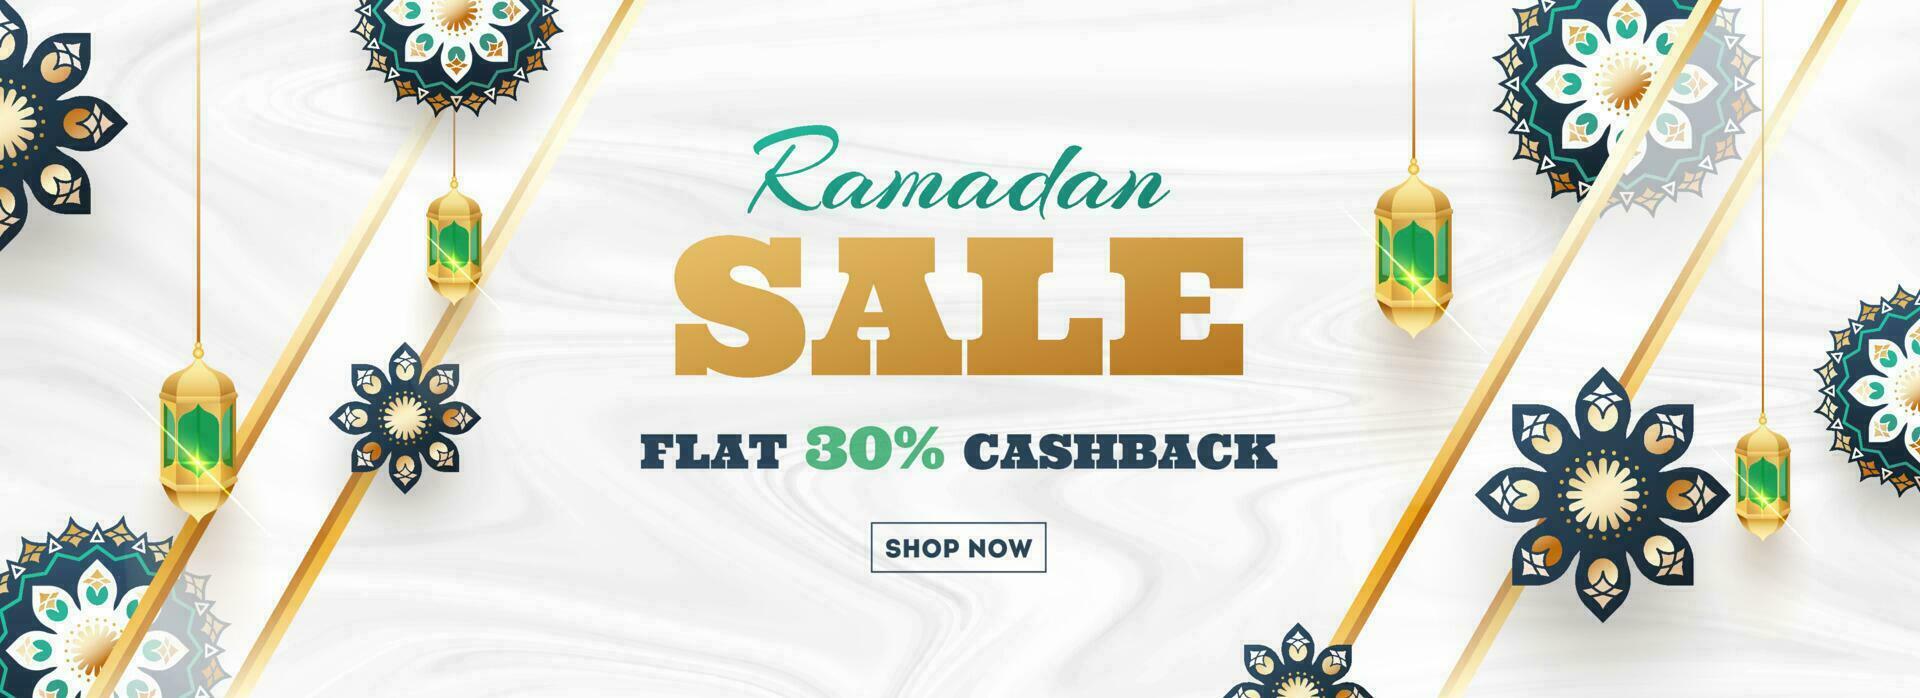 Ramadan Verkauf eben 30 Cashback Header oder Banner Design. Dekoration von schön Blume und Laterne auf glatt Welle Textur Weiß Hintergrund. vektor